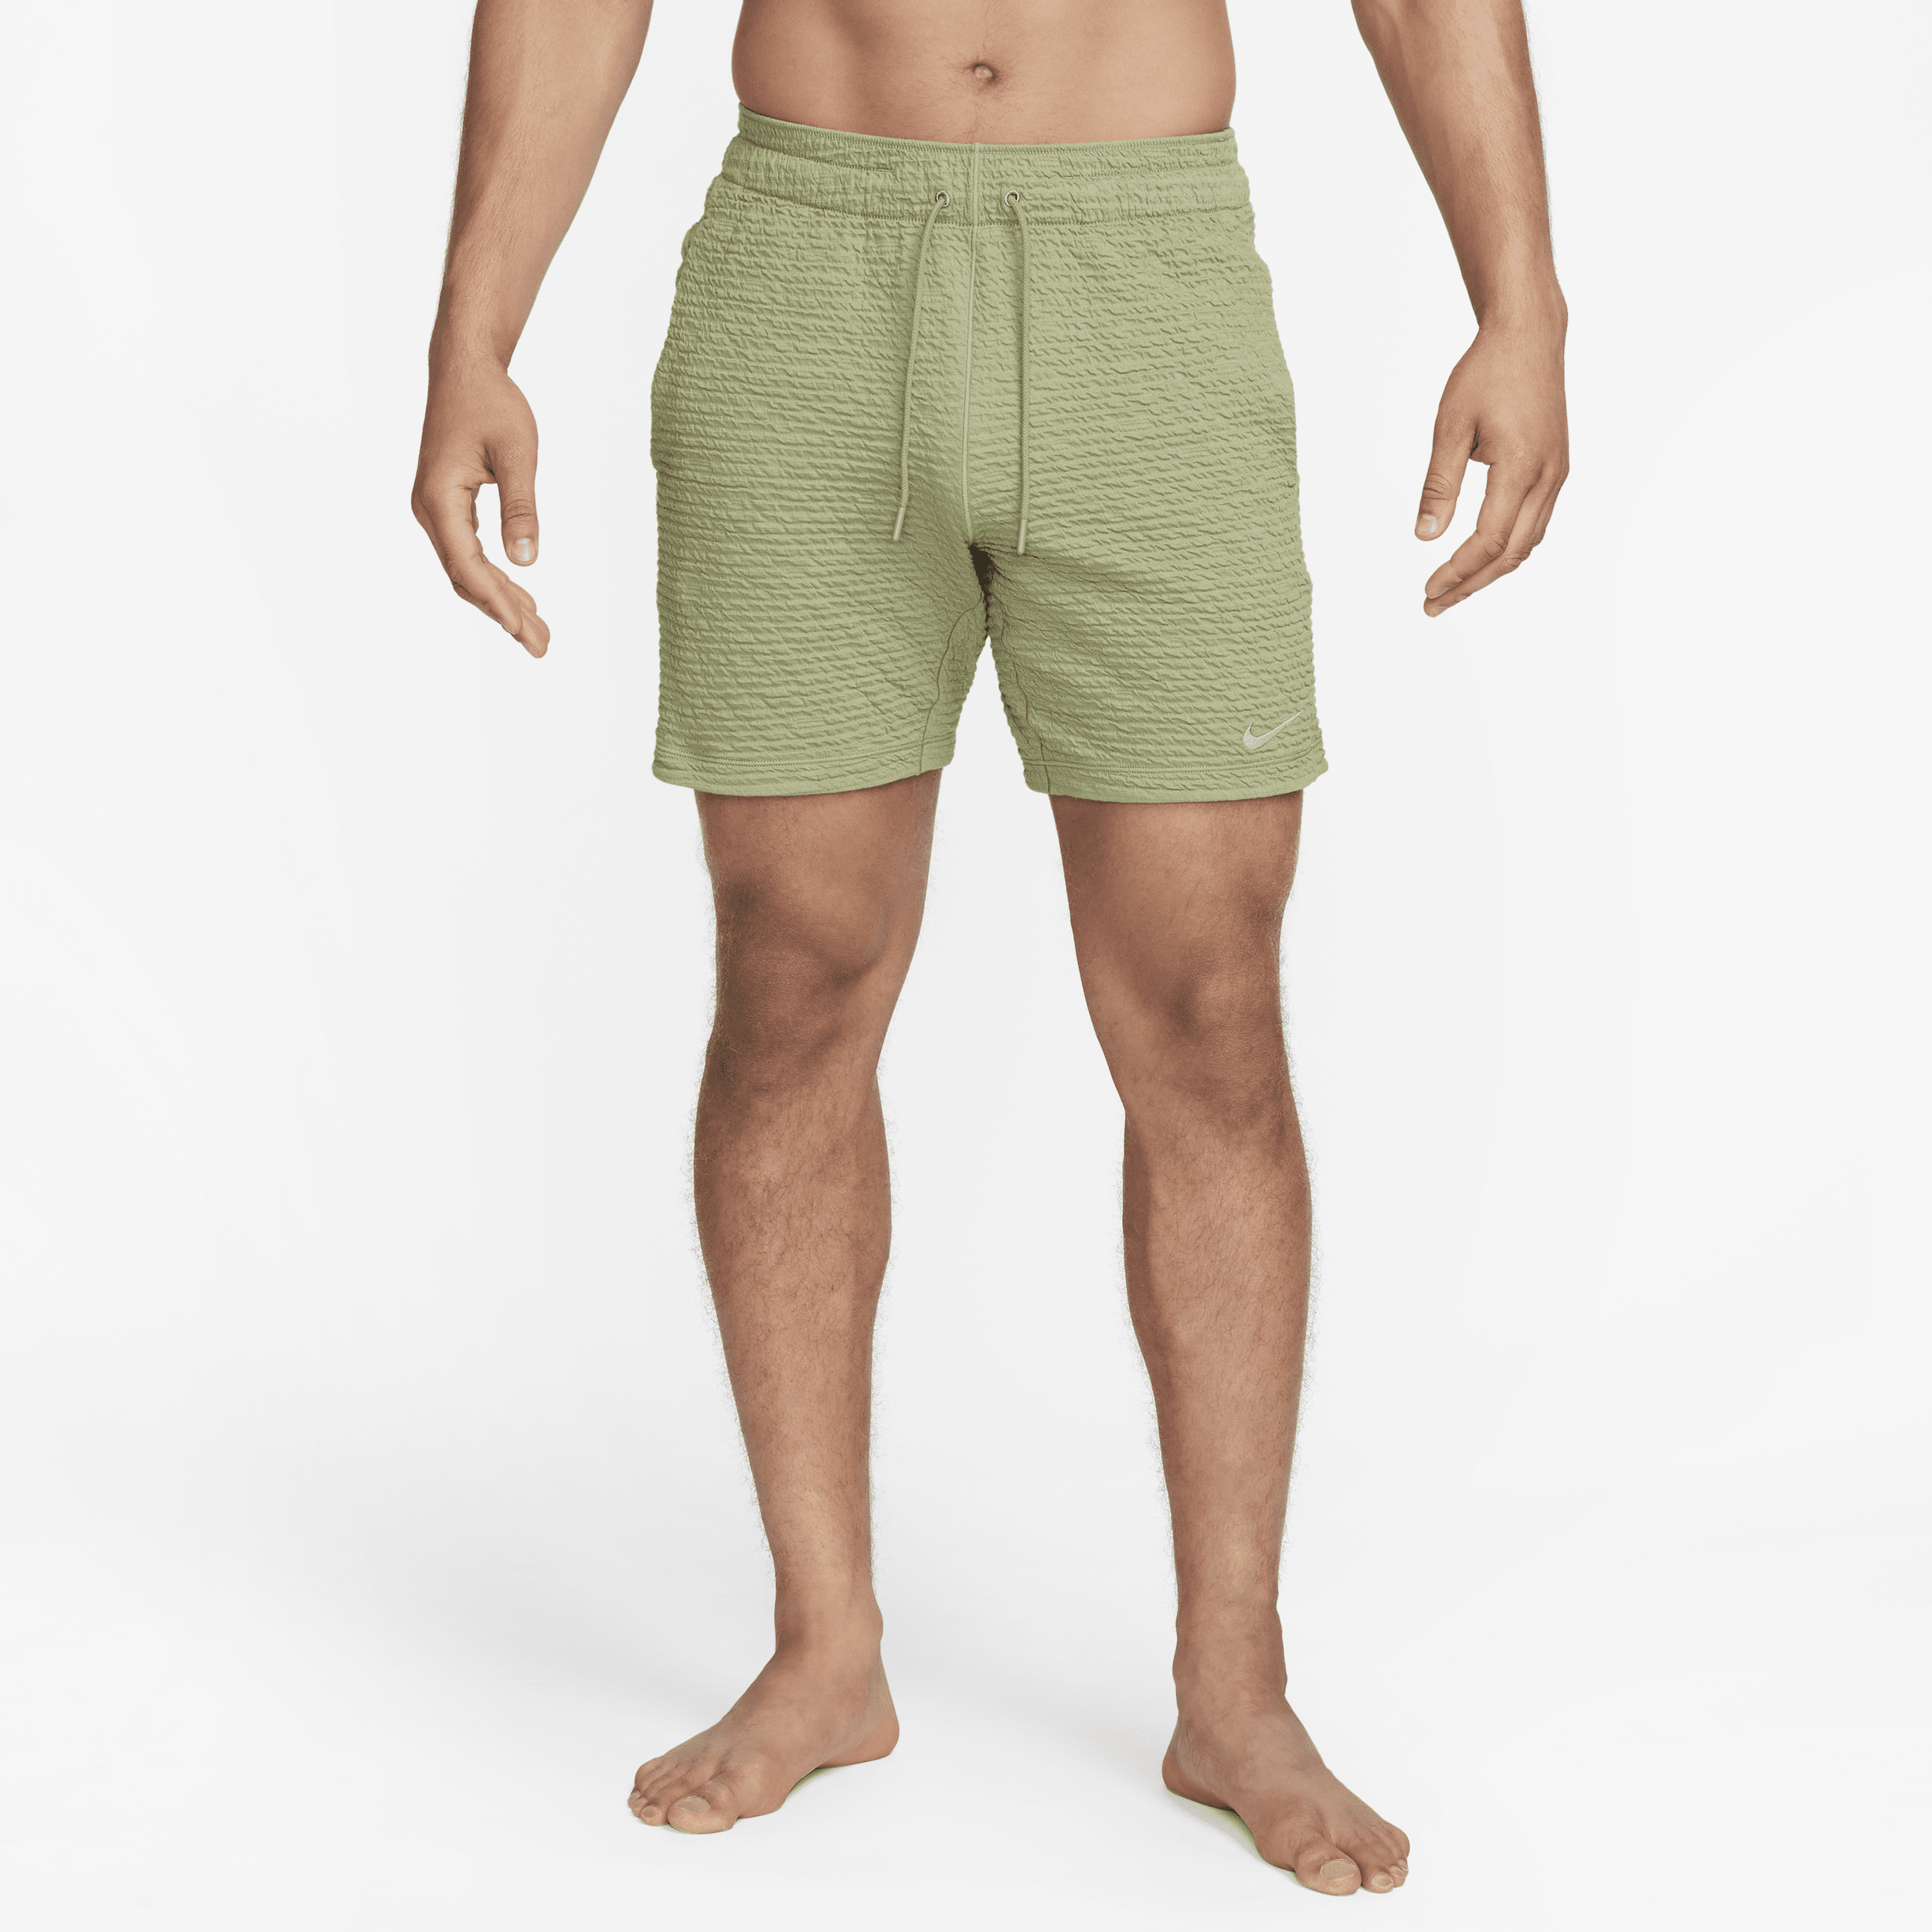 Nike Yoga-Dri-FIT-shorts uden for (18 cm) til mænd - grøn